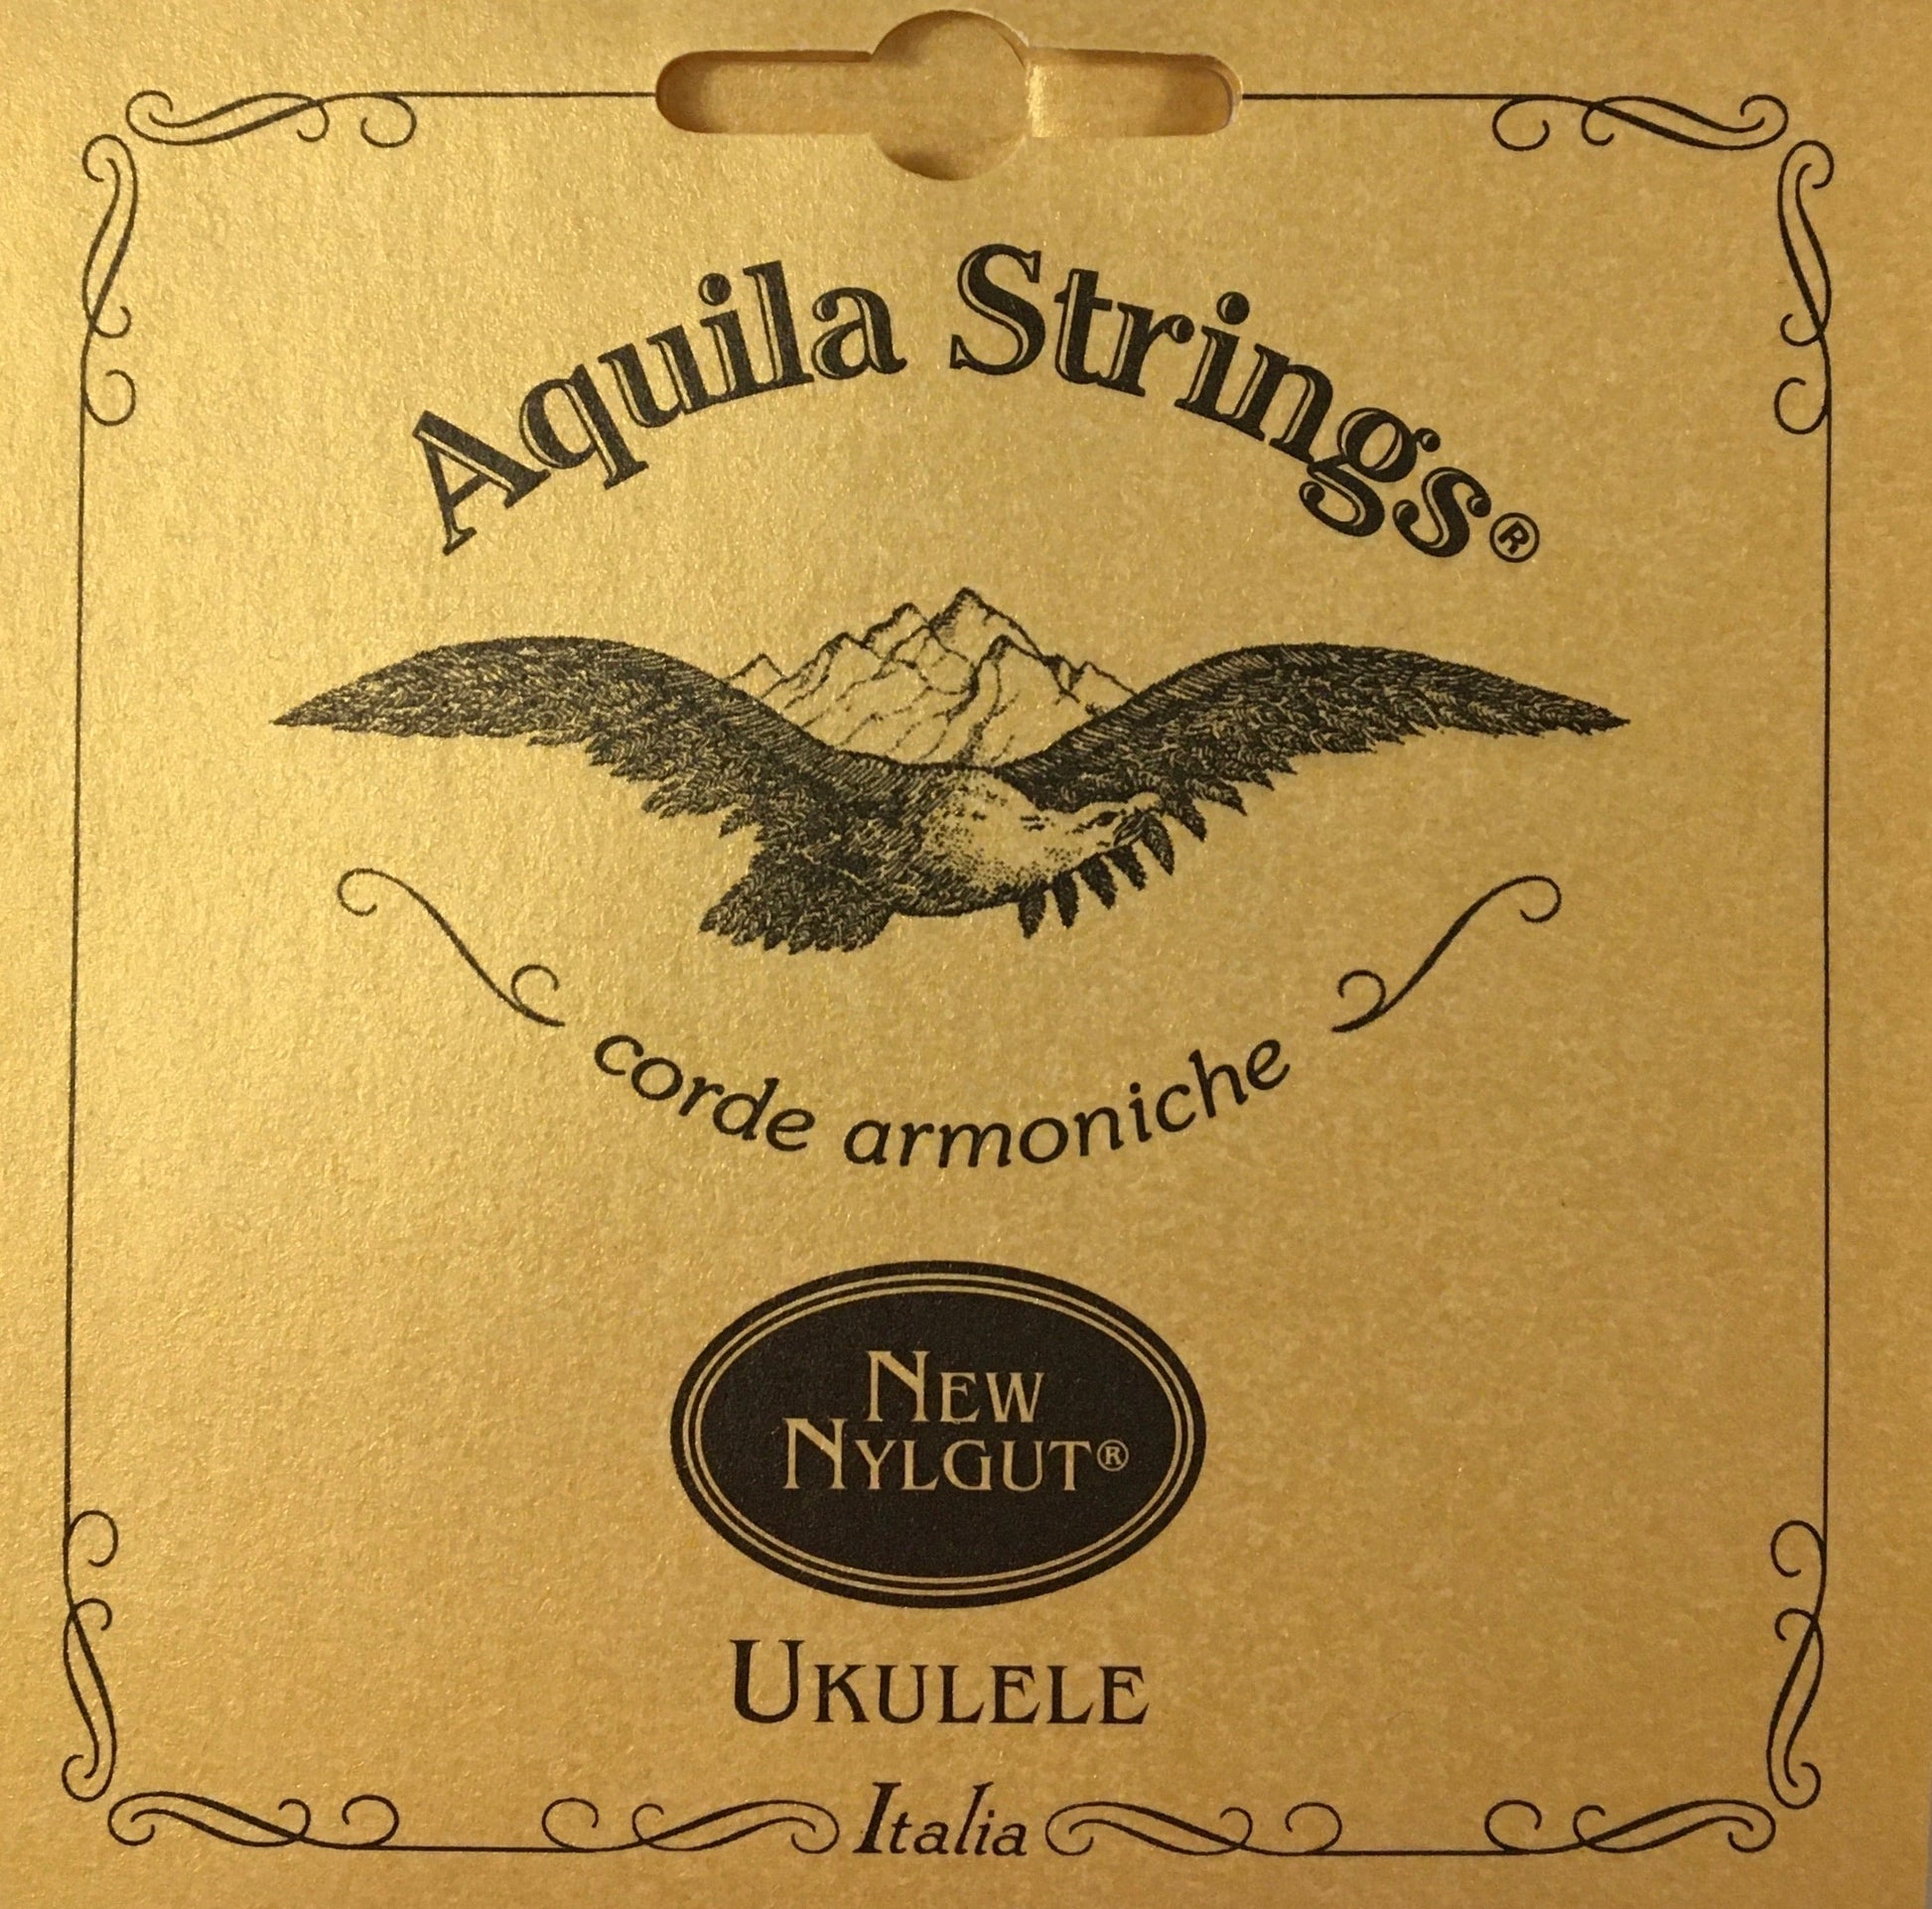 Aquila New Nylgut Soprano Ukulele String Set Strings, Bows & More